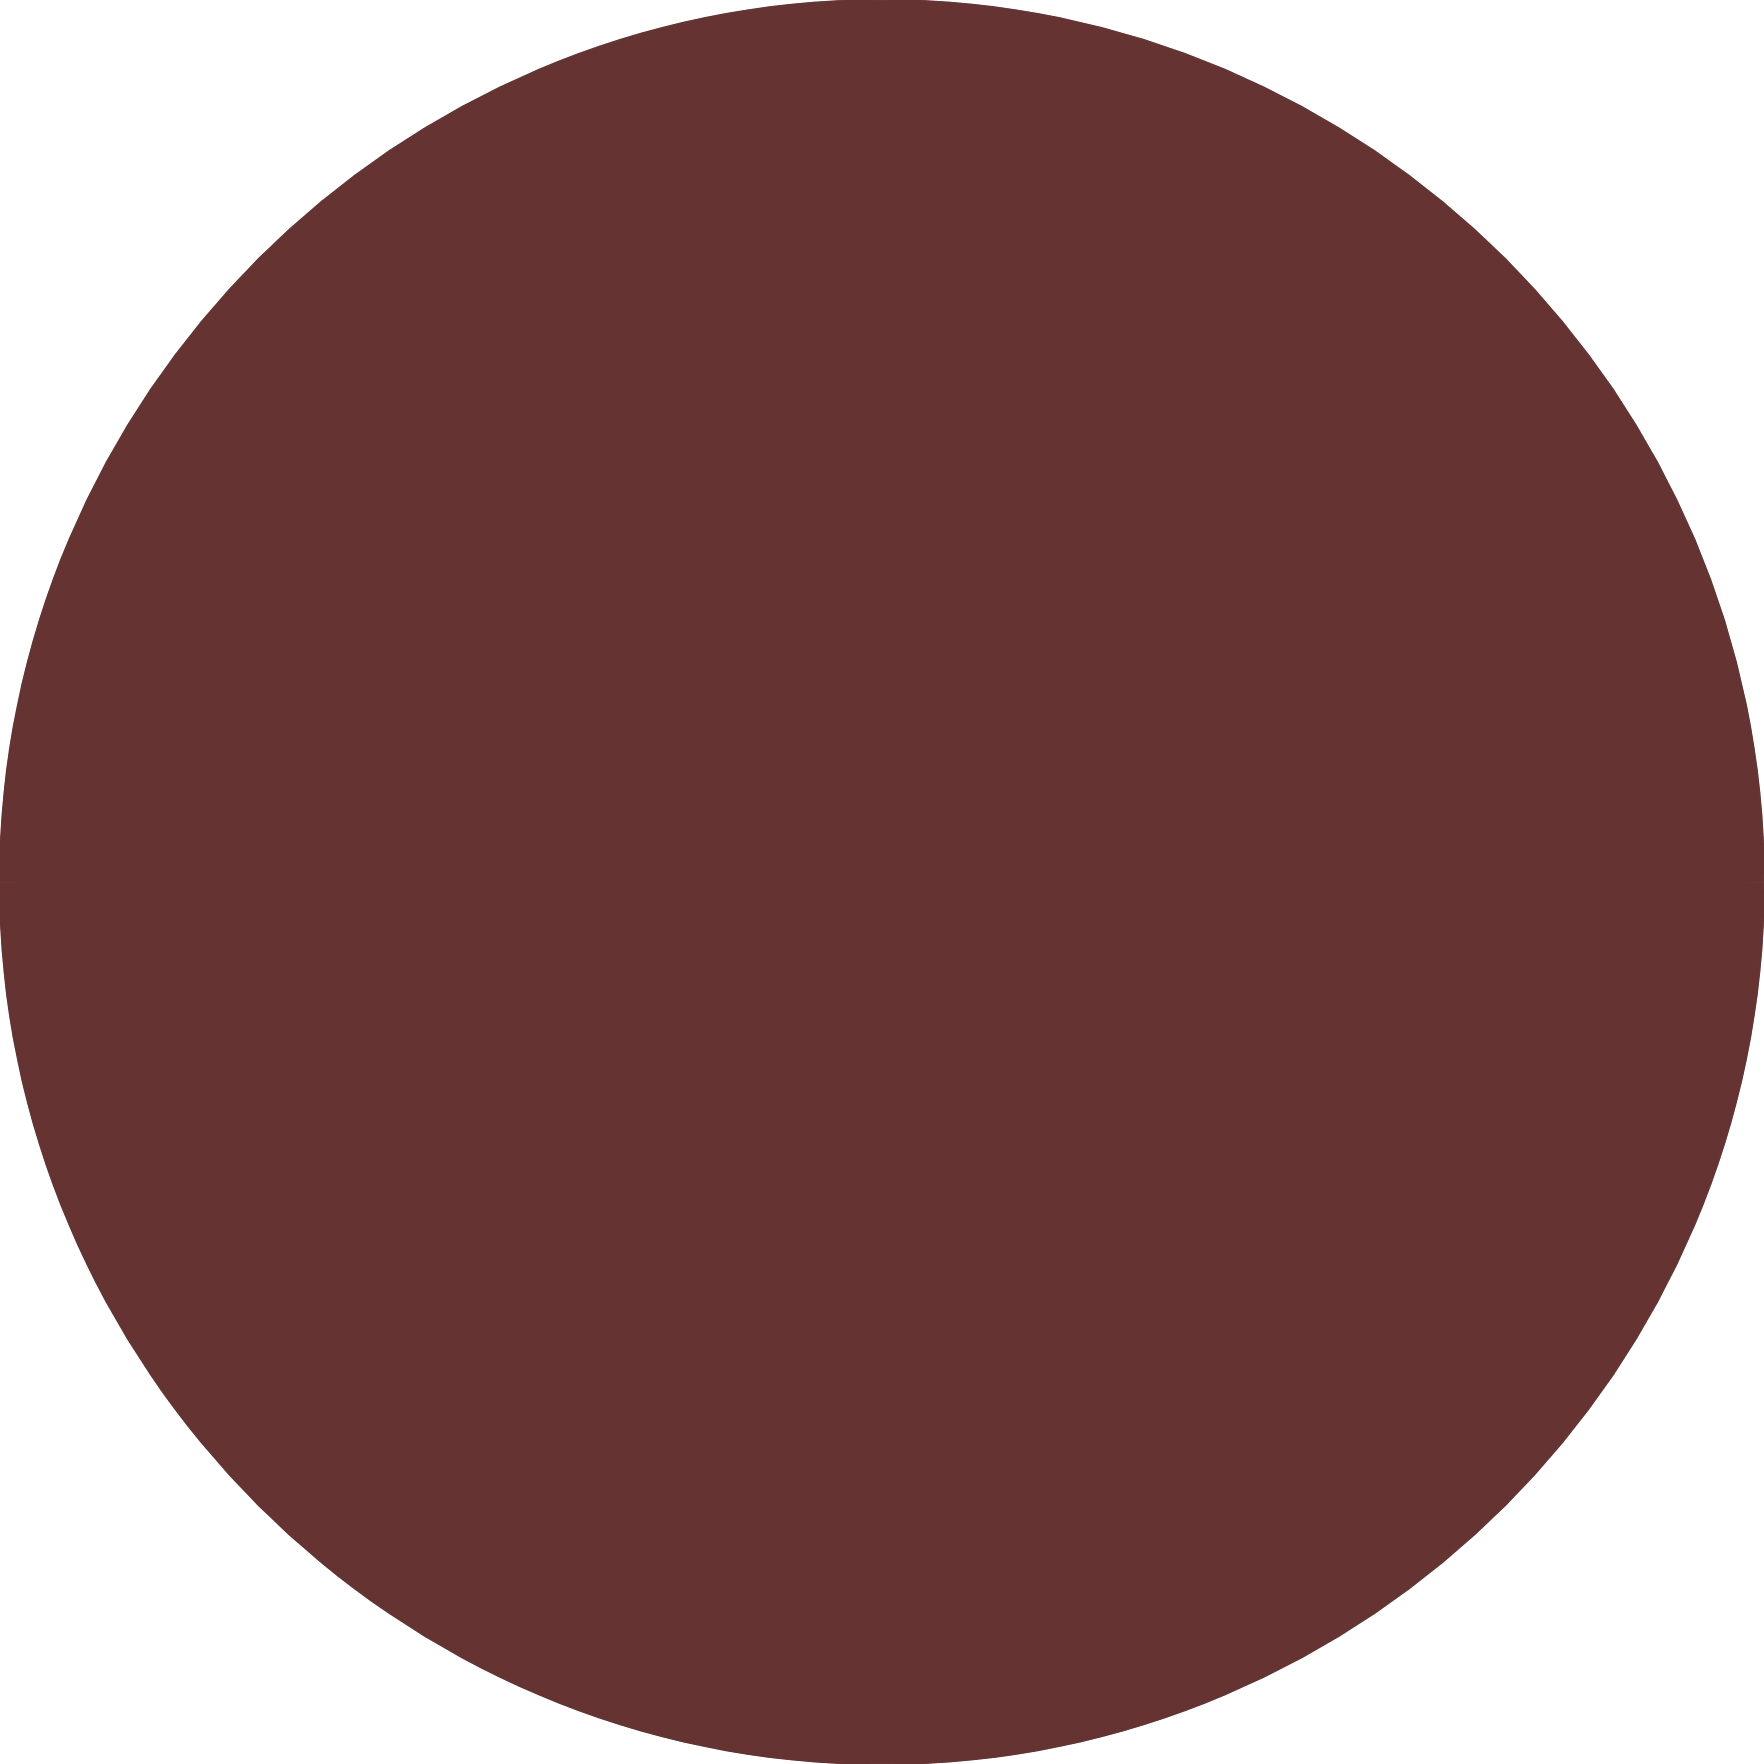 Prik mørk brun